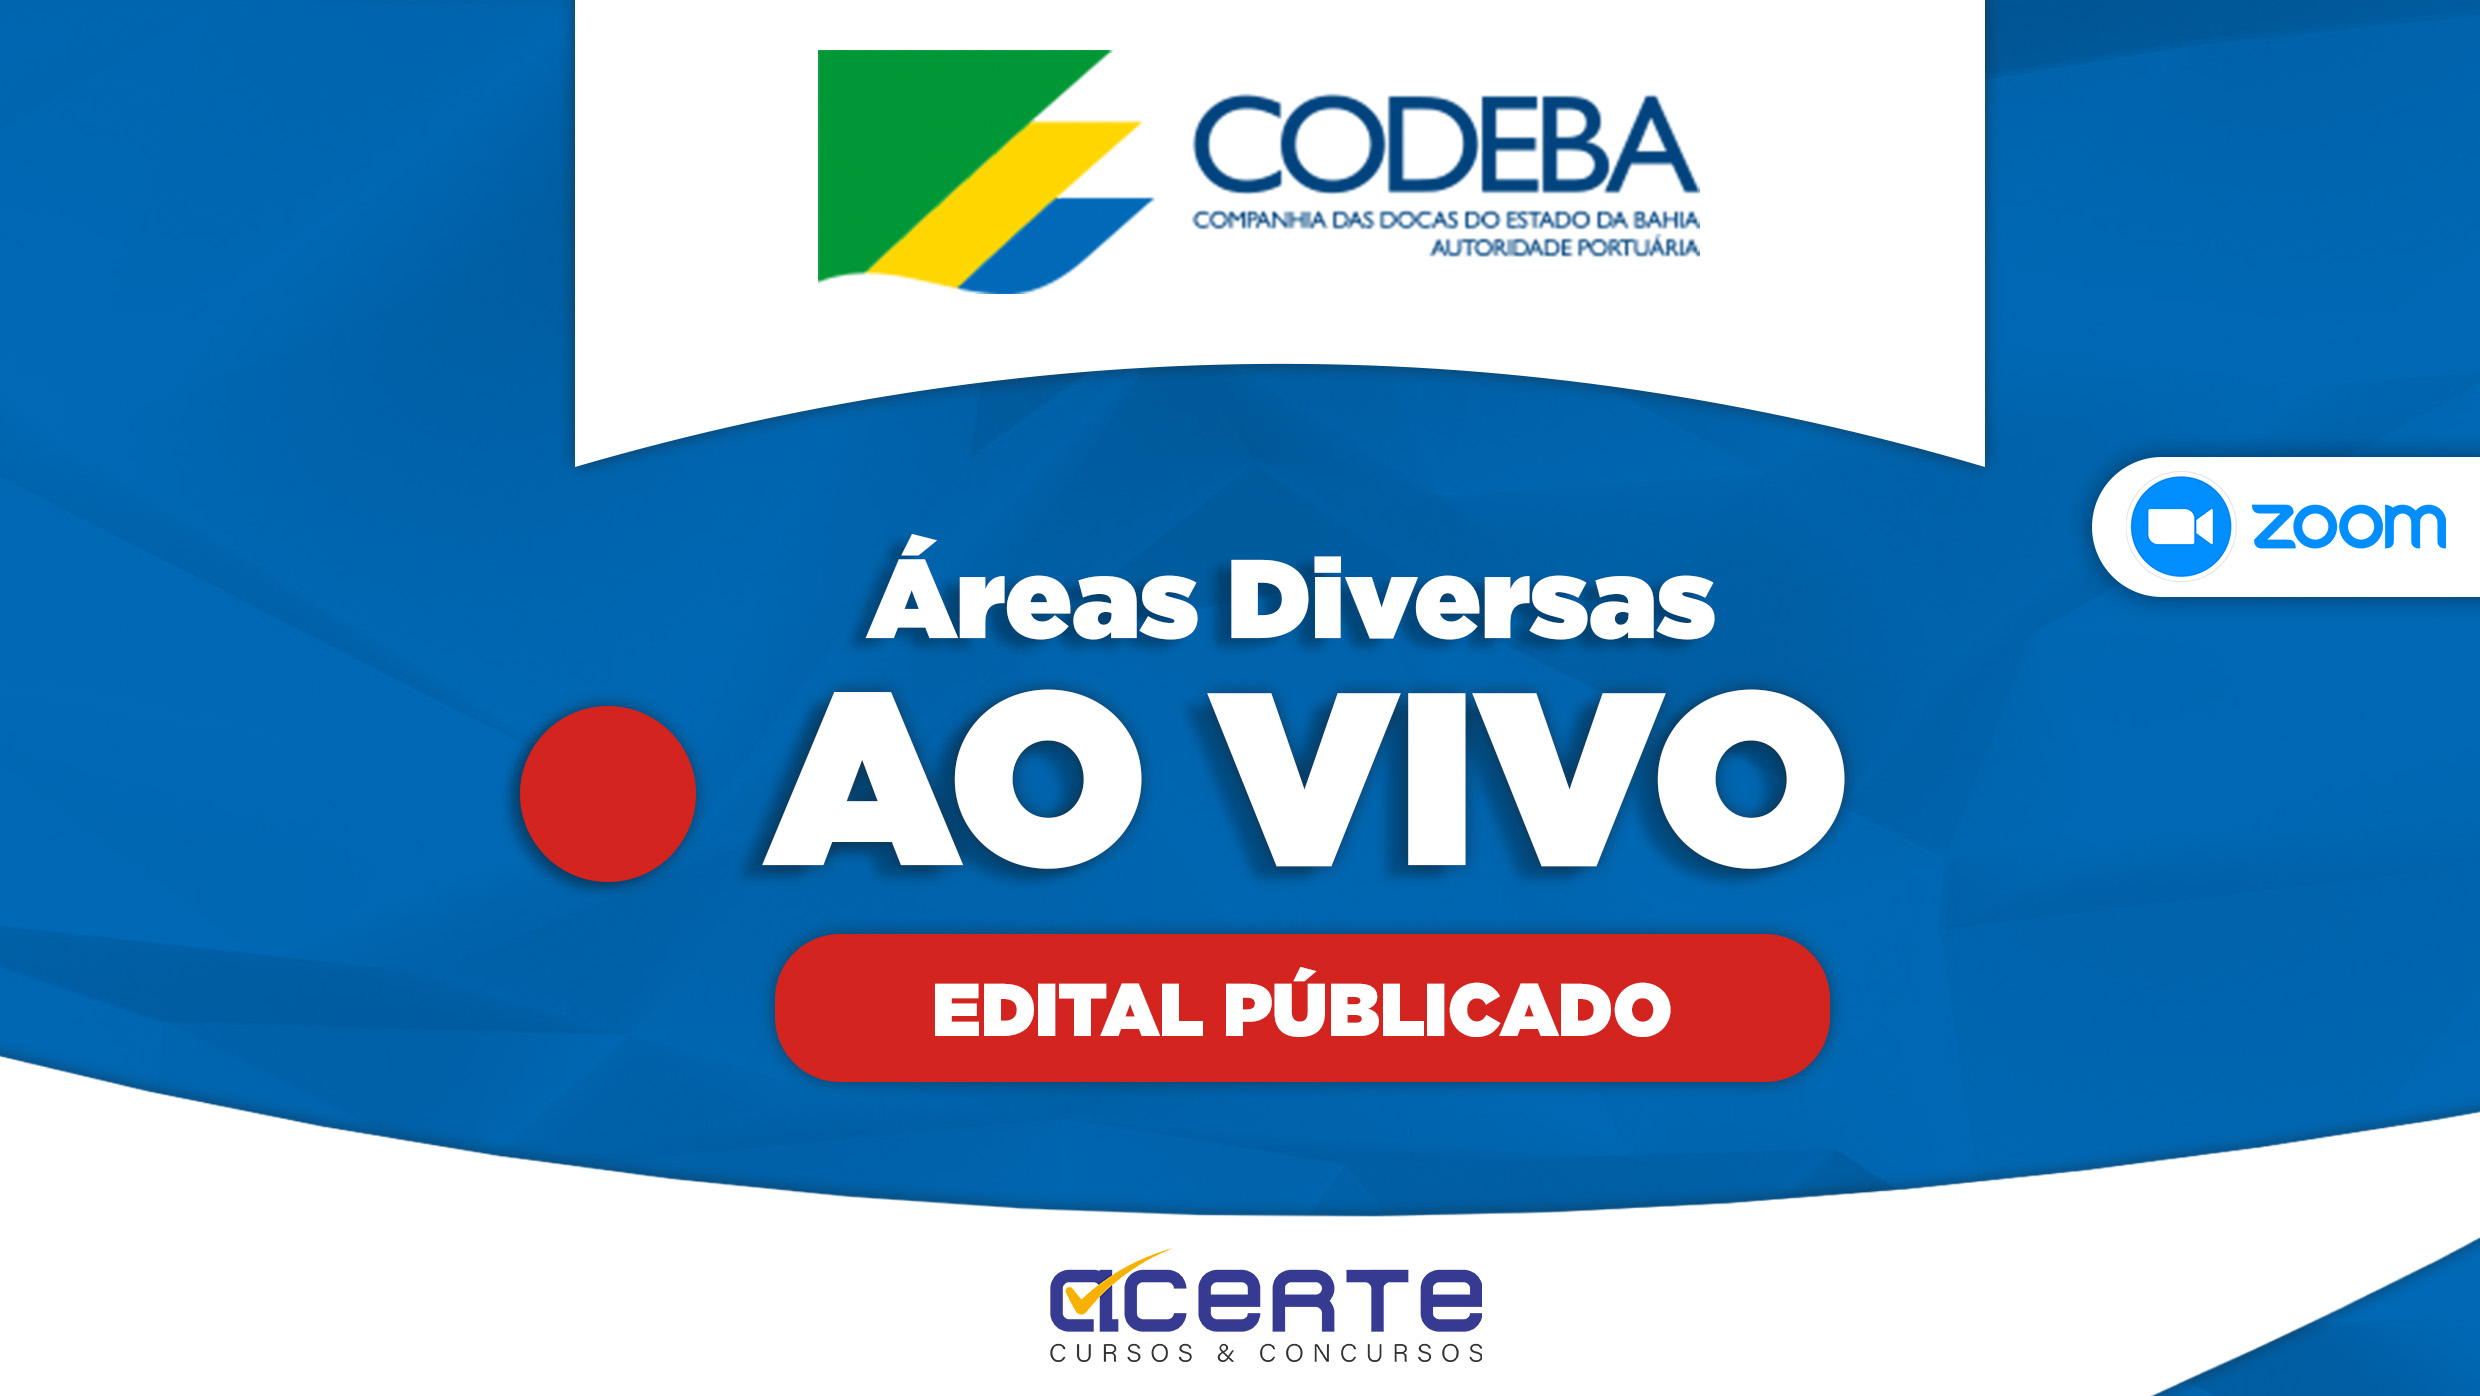 CODEBA - Analista - Áreas Diversas - AO VIVO - Edital Publicado